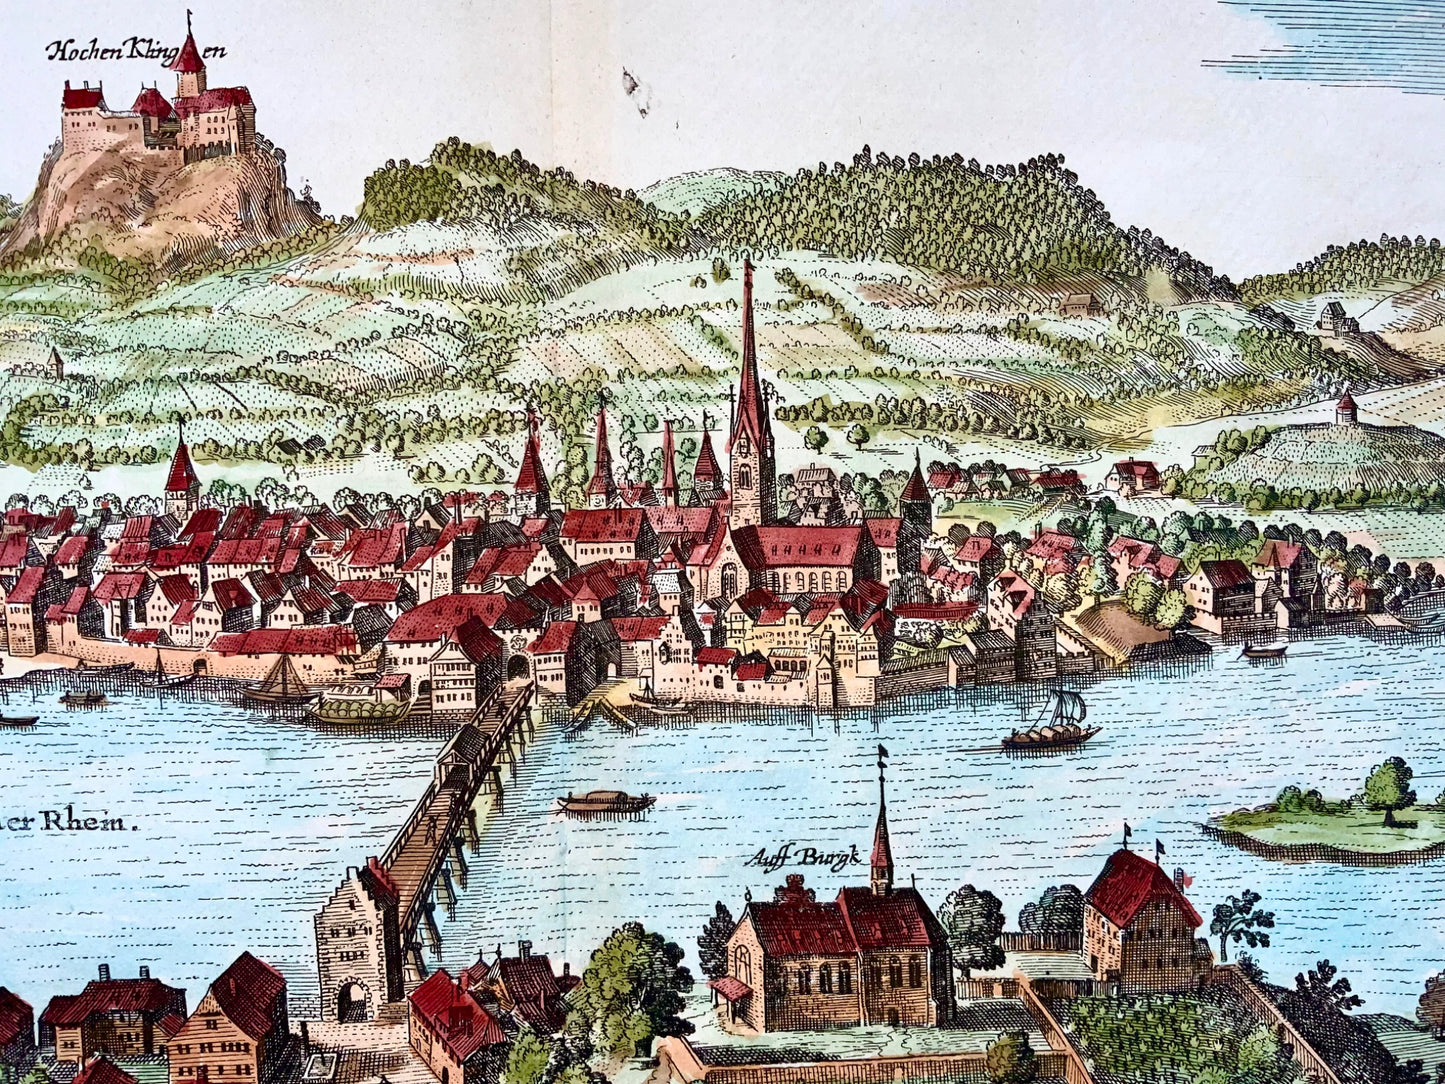 1654 Merian, Stein am Rhein, grand double in-folio, Suisse